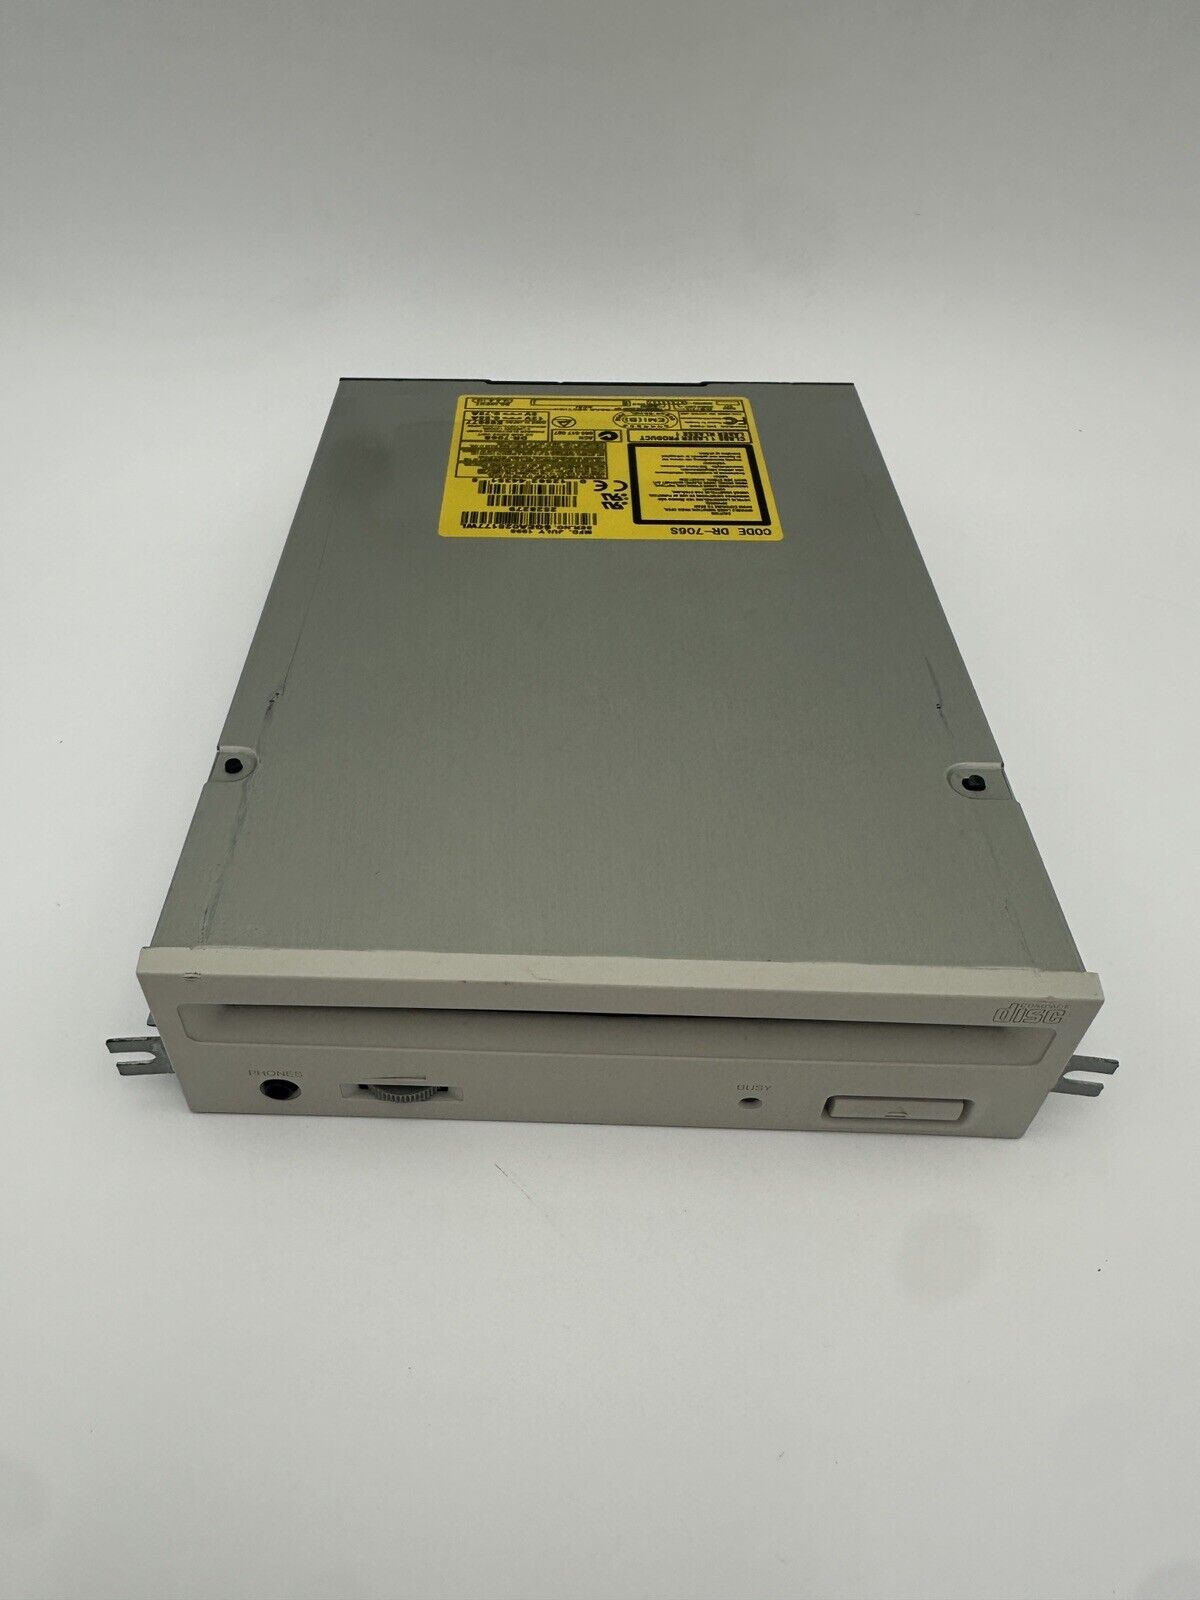 Vintage Pioneer DR-706S CD ROM Scsi Internal Drive Unit - Used - Works